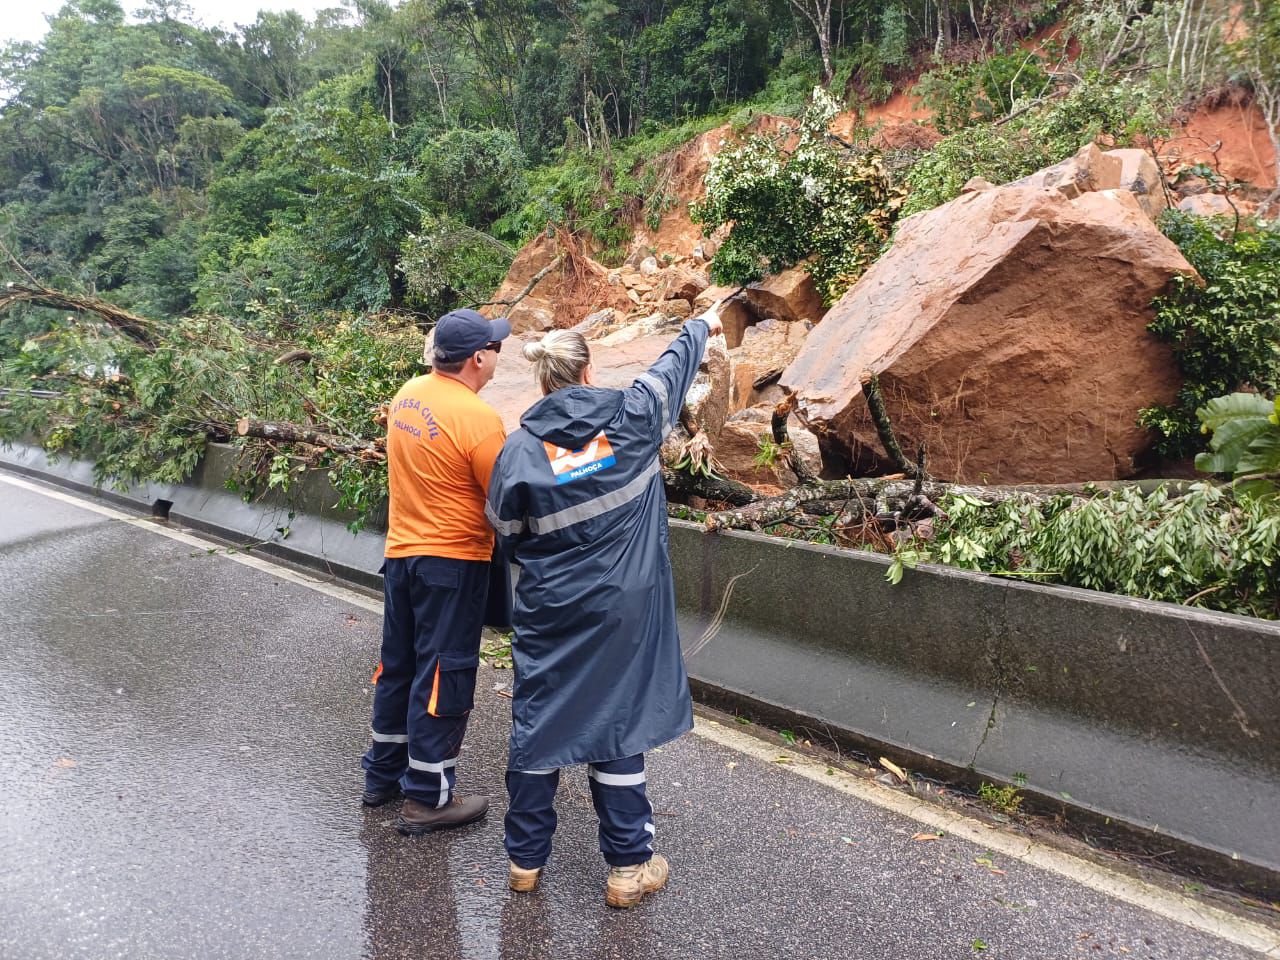 Equipes do Governo do Estado trabalham em auxílio à população afetada pela chuva, Grande Florianópolis é a região mais atingida